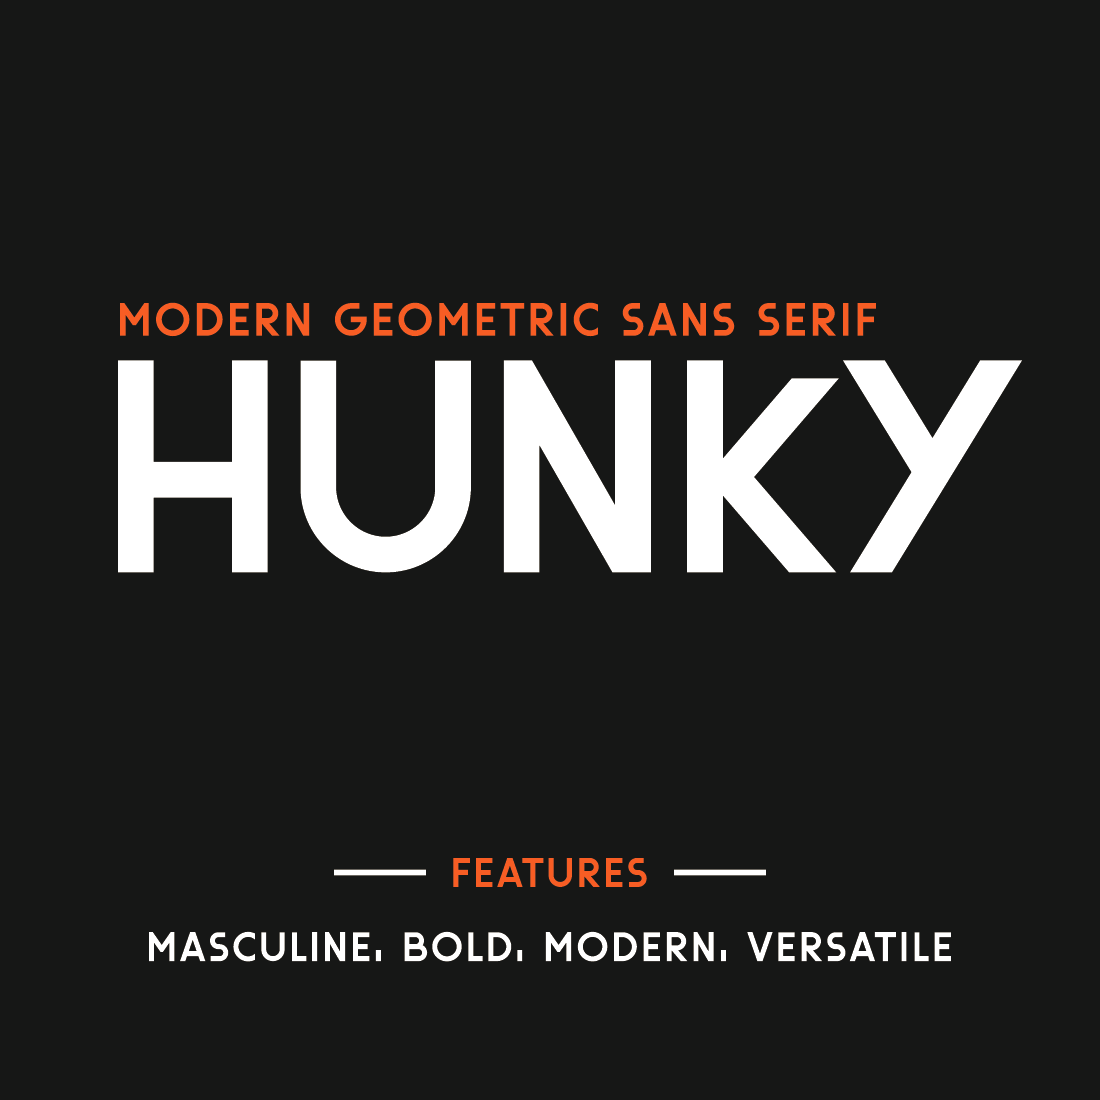 Hunky-Geometric Sans Serif Font cover image.